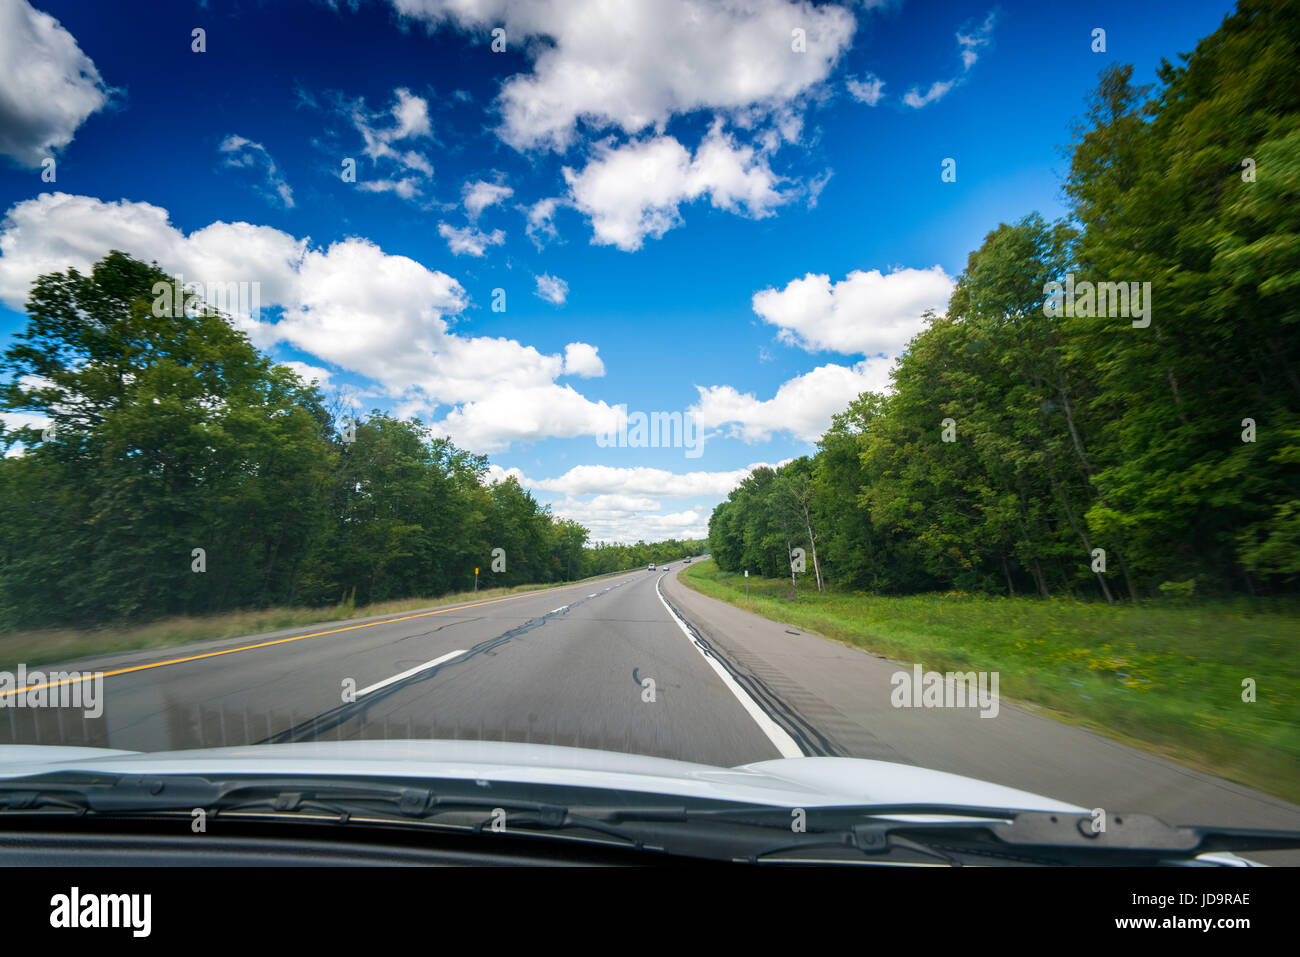 Vue sur rue principale vue à travers pare-brise de voiture avec des nuages blancs dans le ciel. 2016 urban city United States of America Banque D'Images